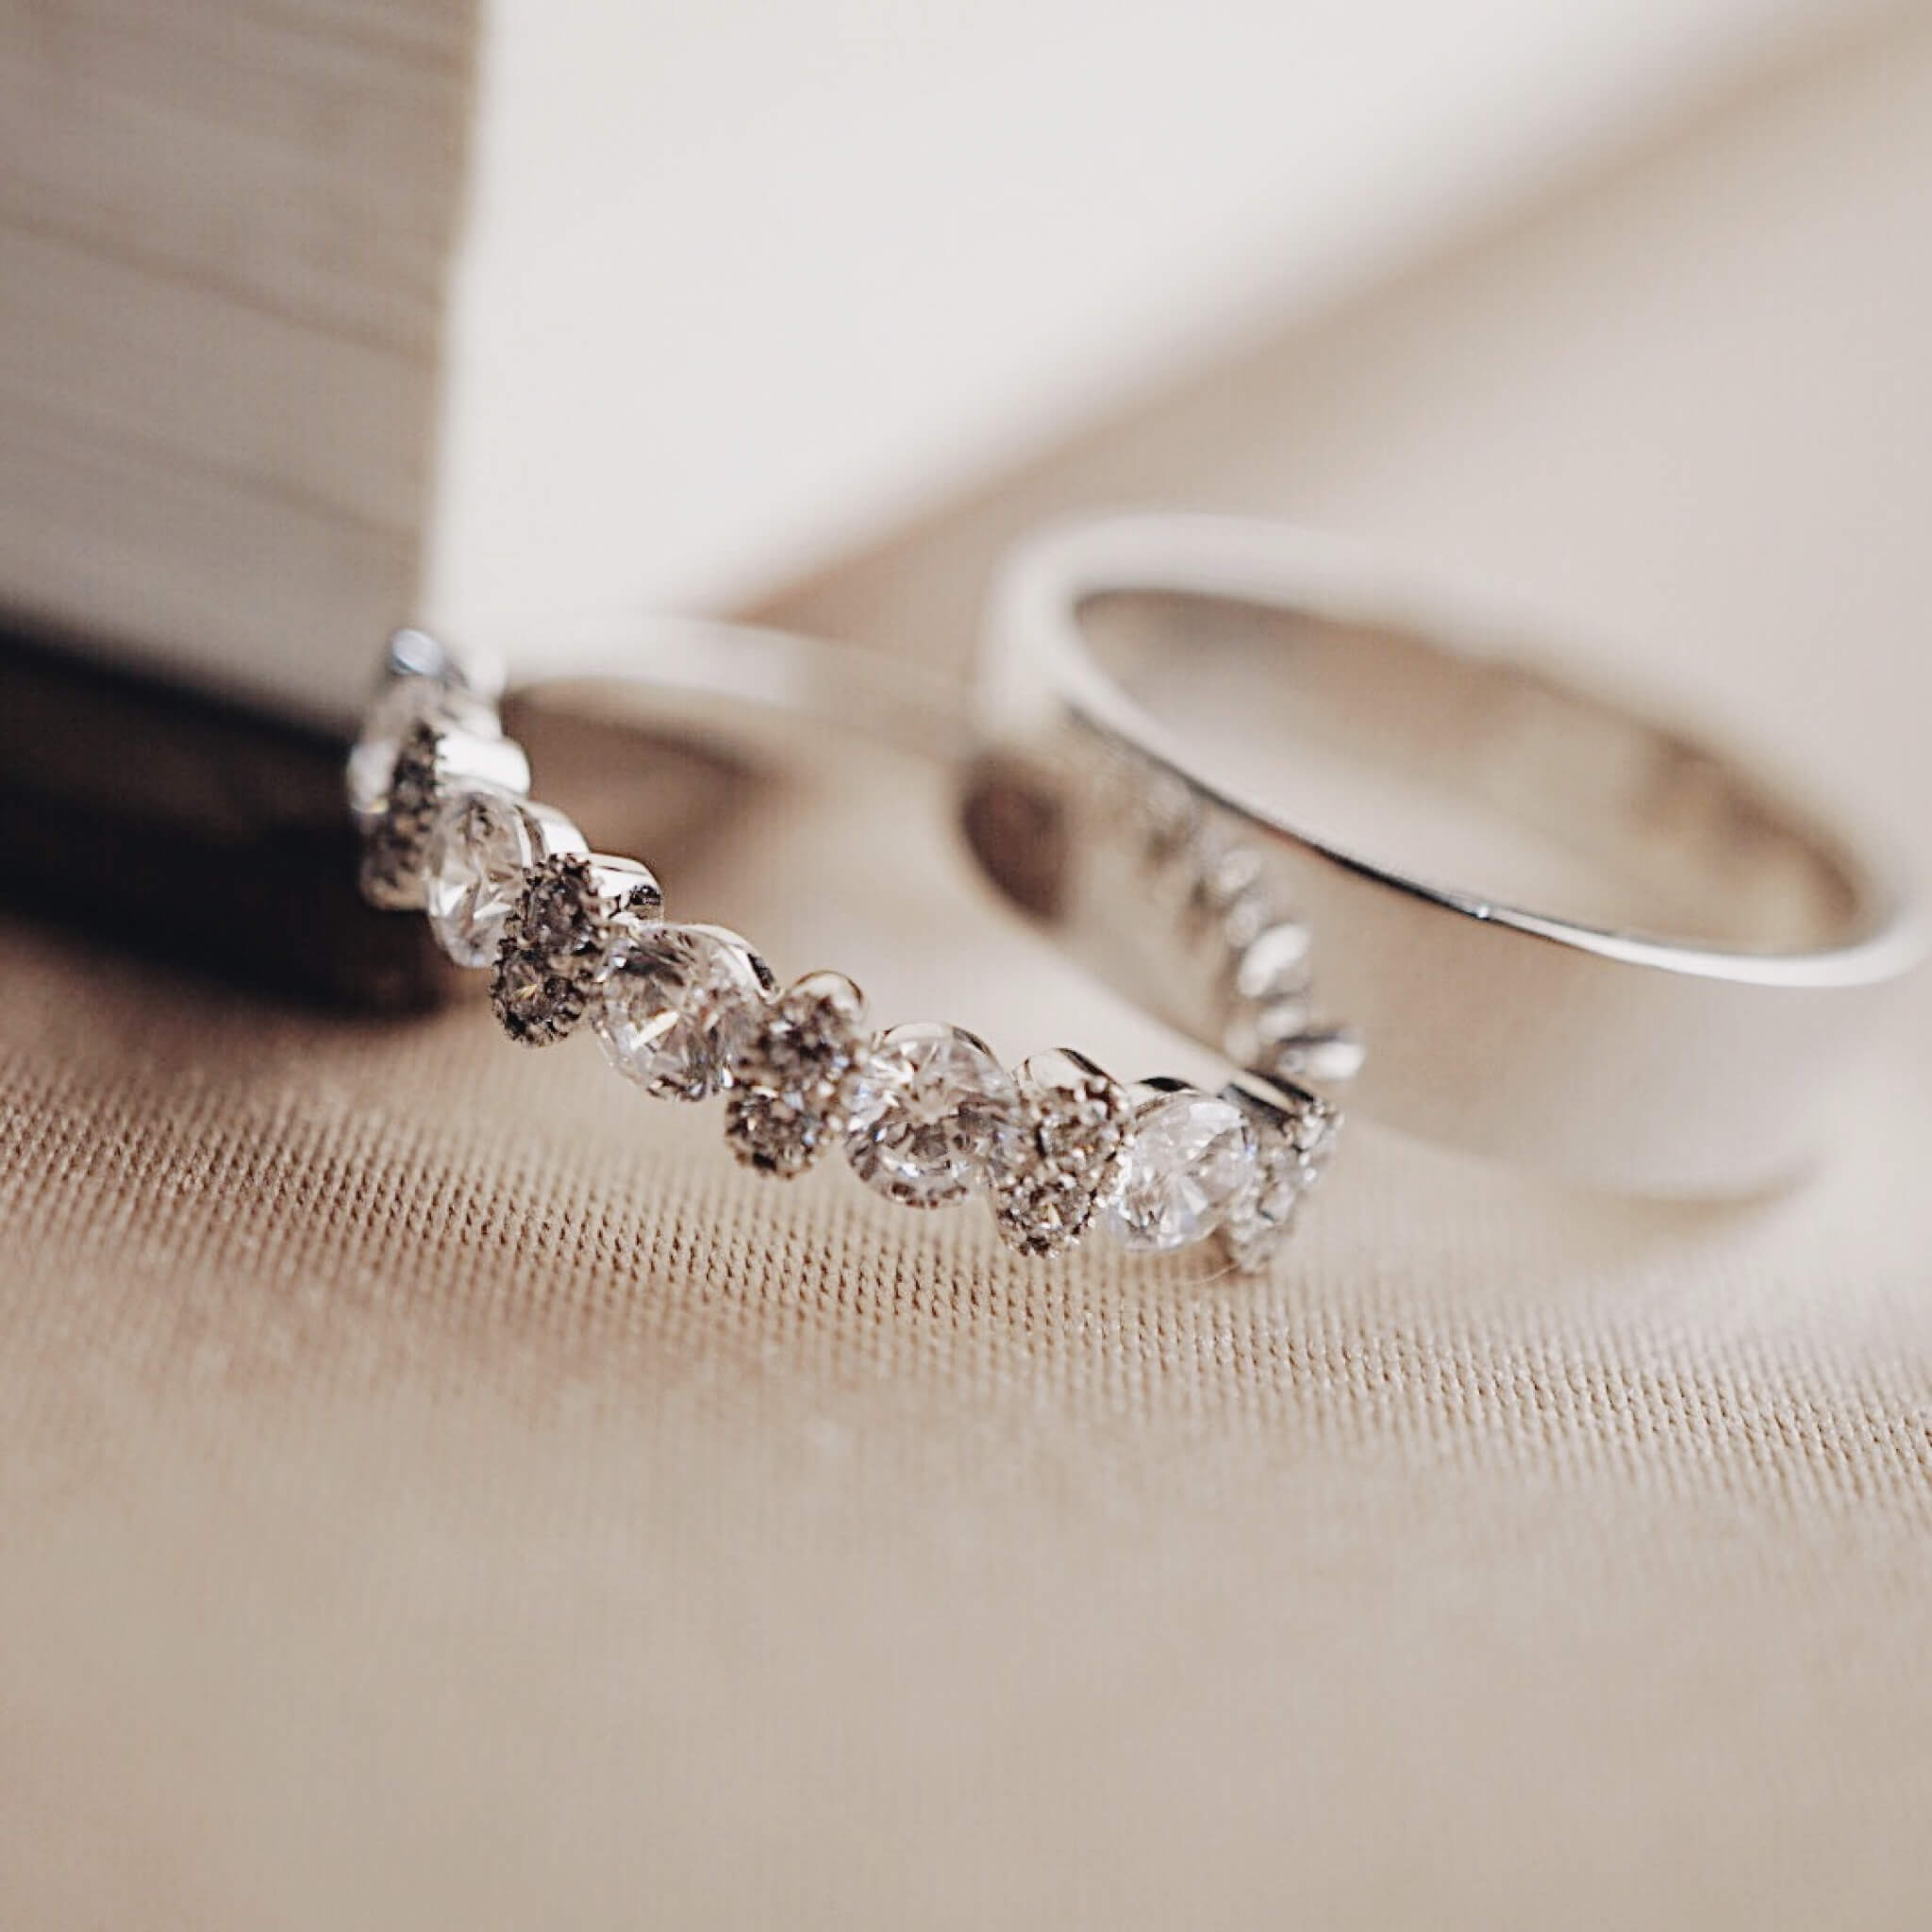 Lựa chọn chất liệu nhẫn cưới như thế nào? | Skymond.com.vn - YouTube